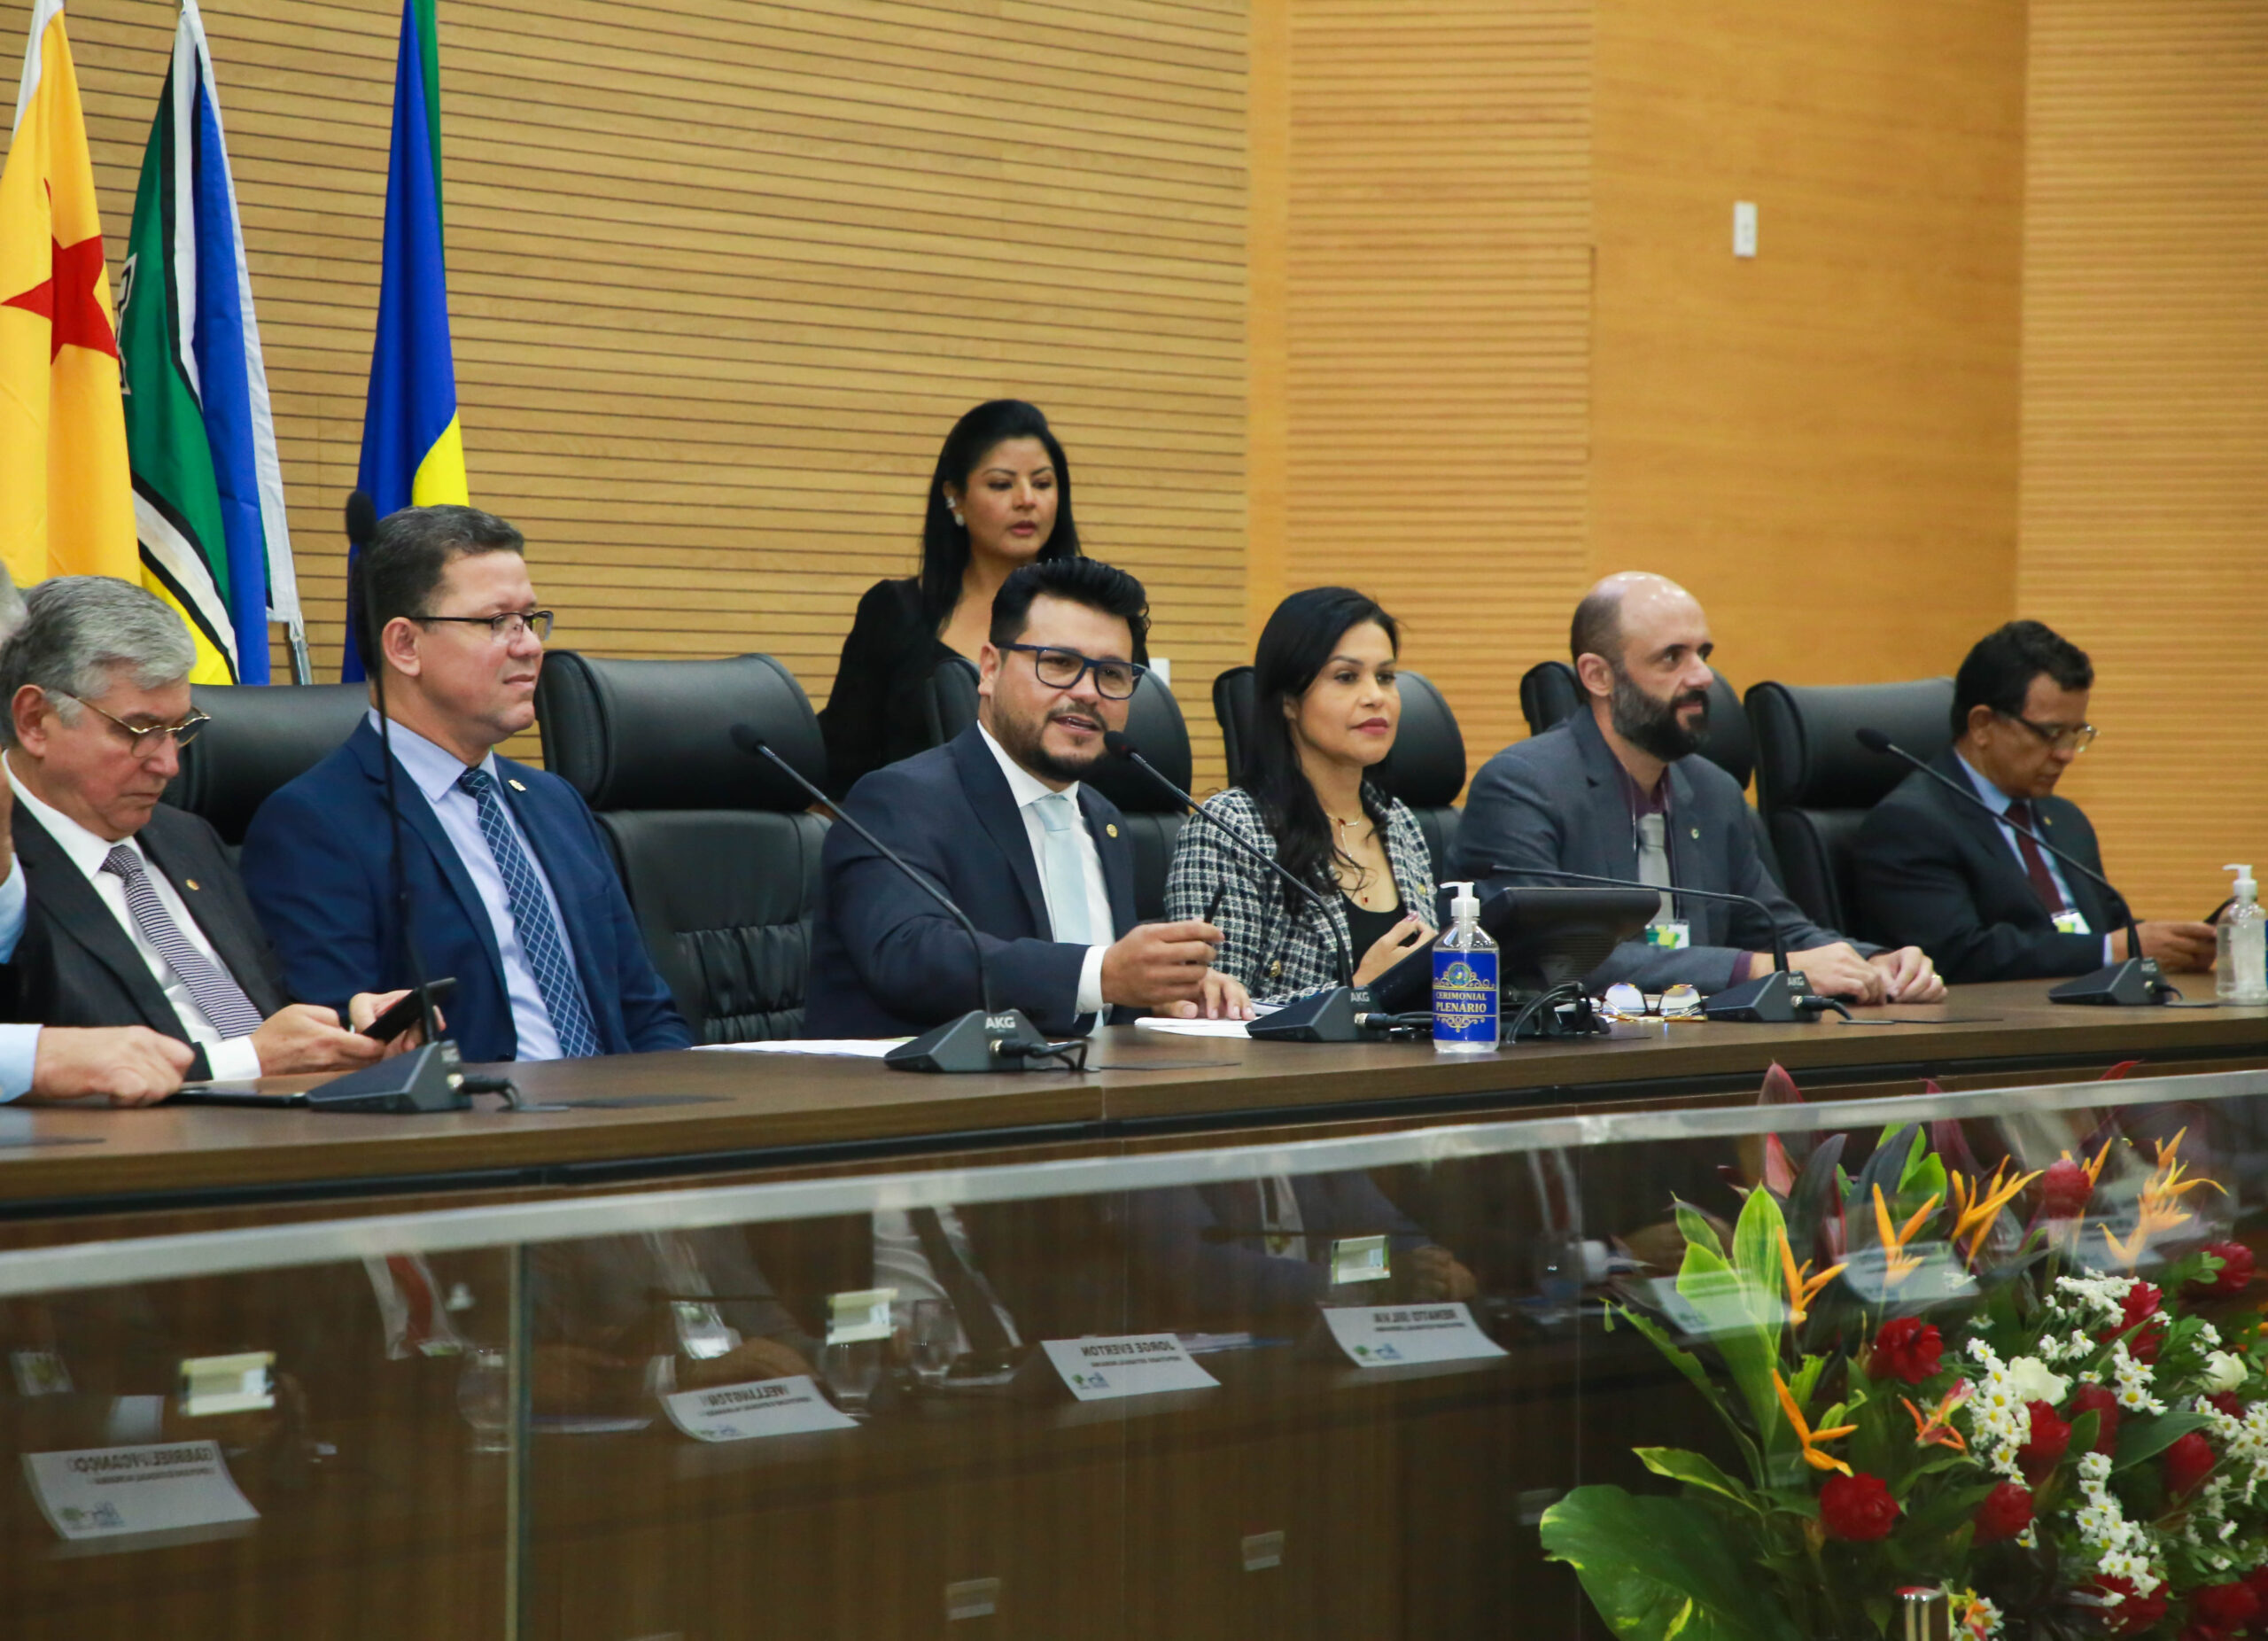 Presidente Marcelo Cruz parabeniza Parlamento Amazônico e agradece visita de deputados de nove estados brasileiros